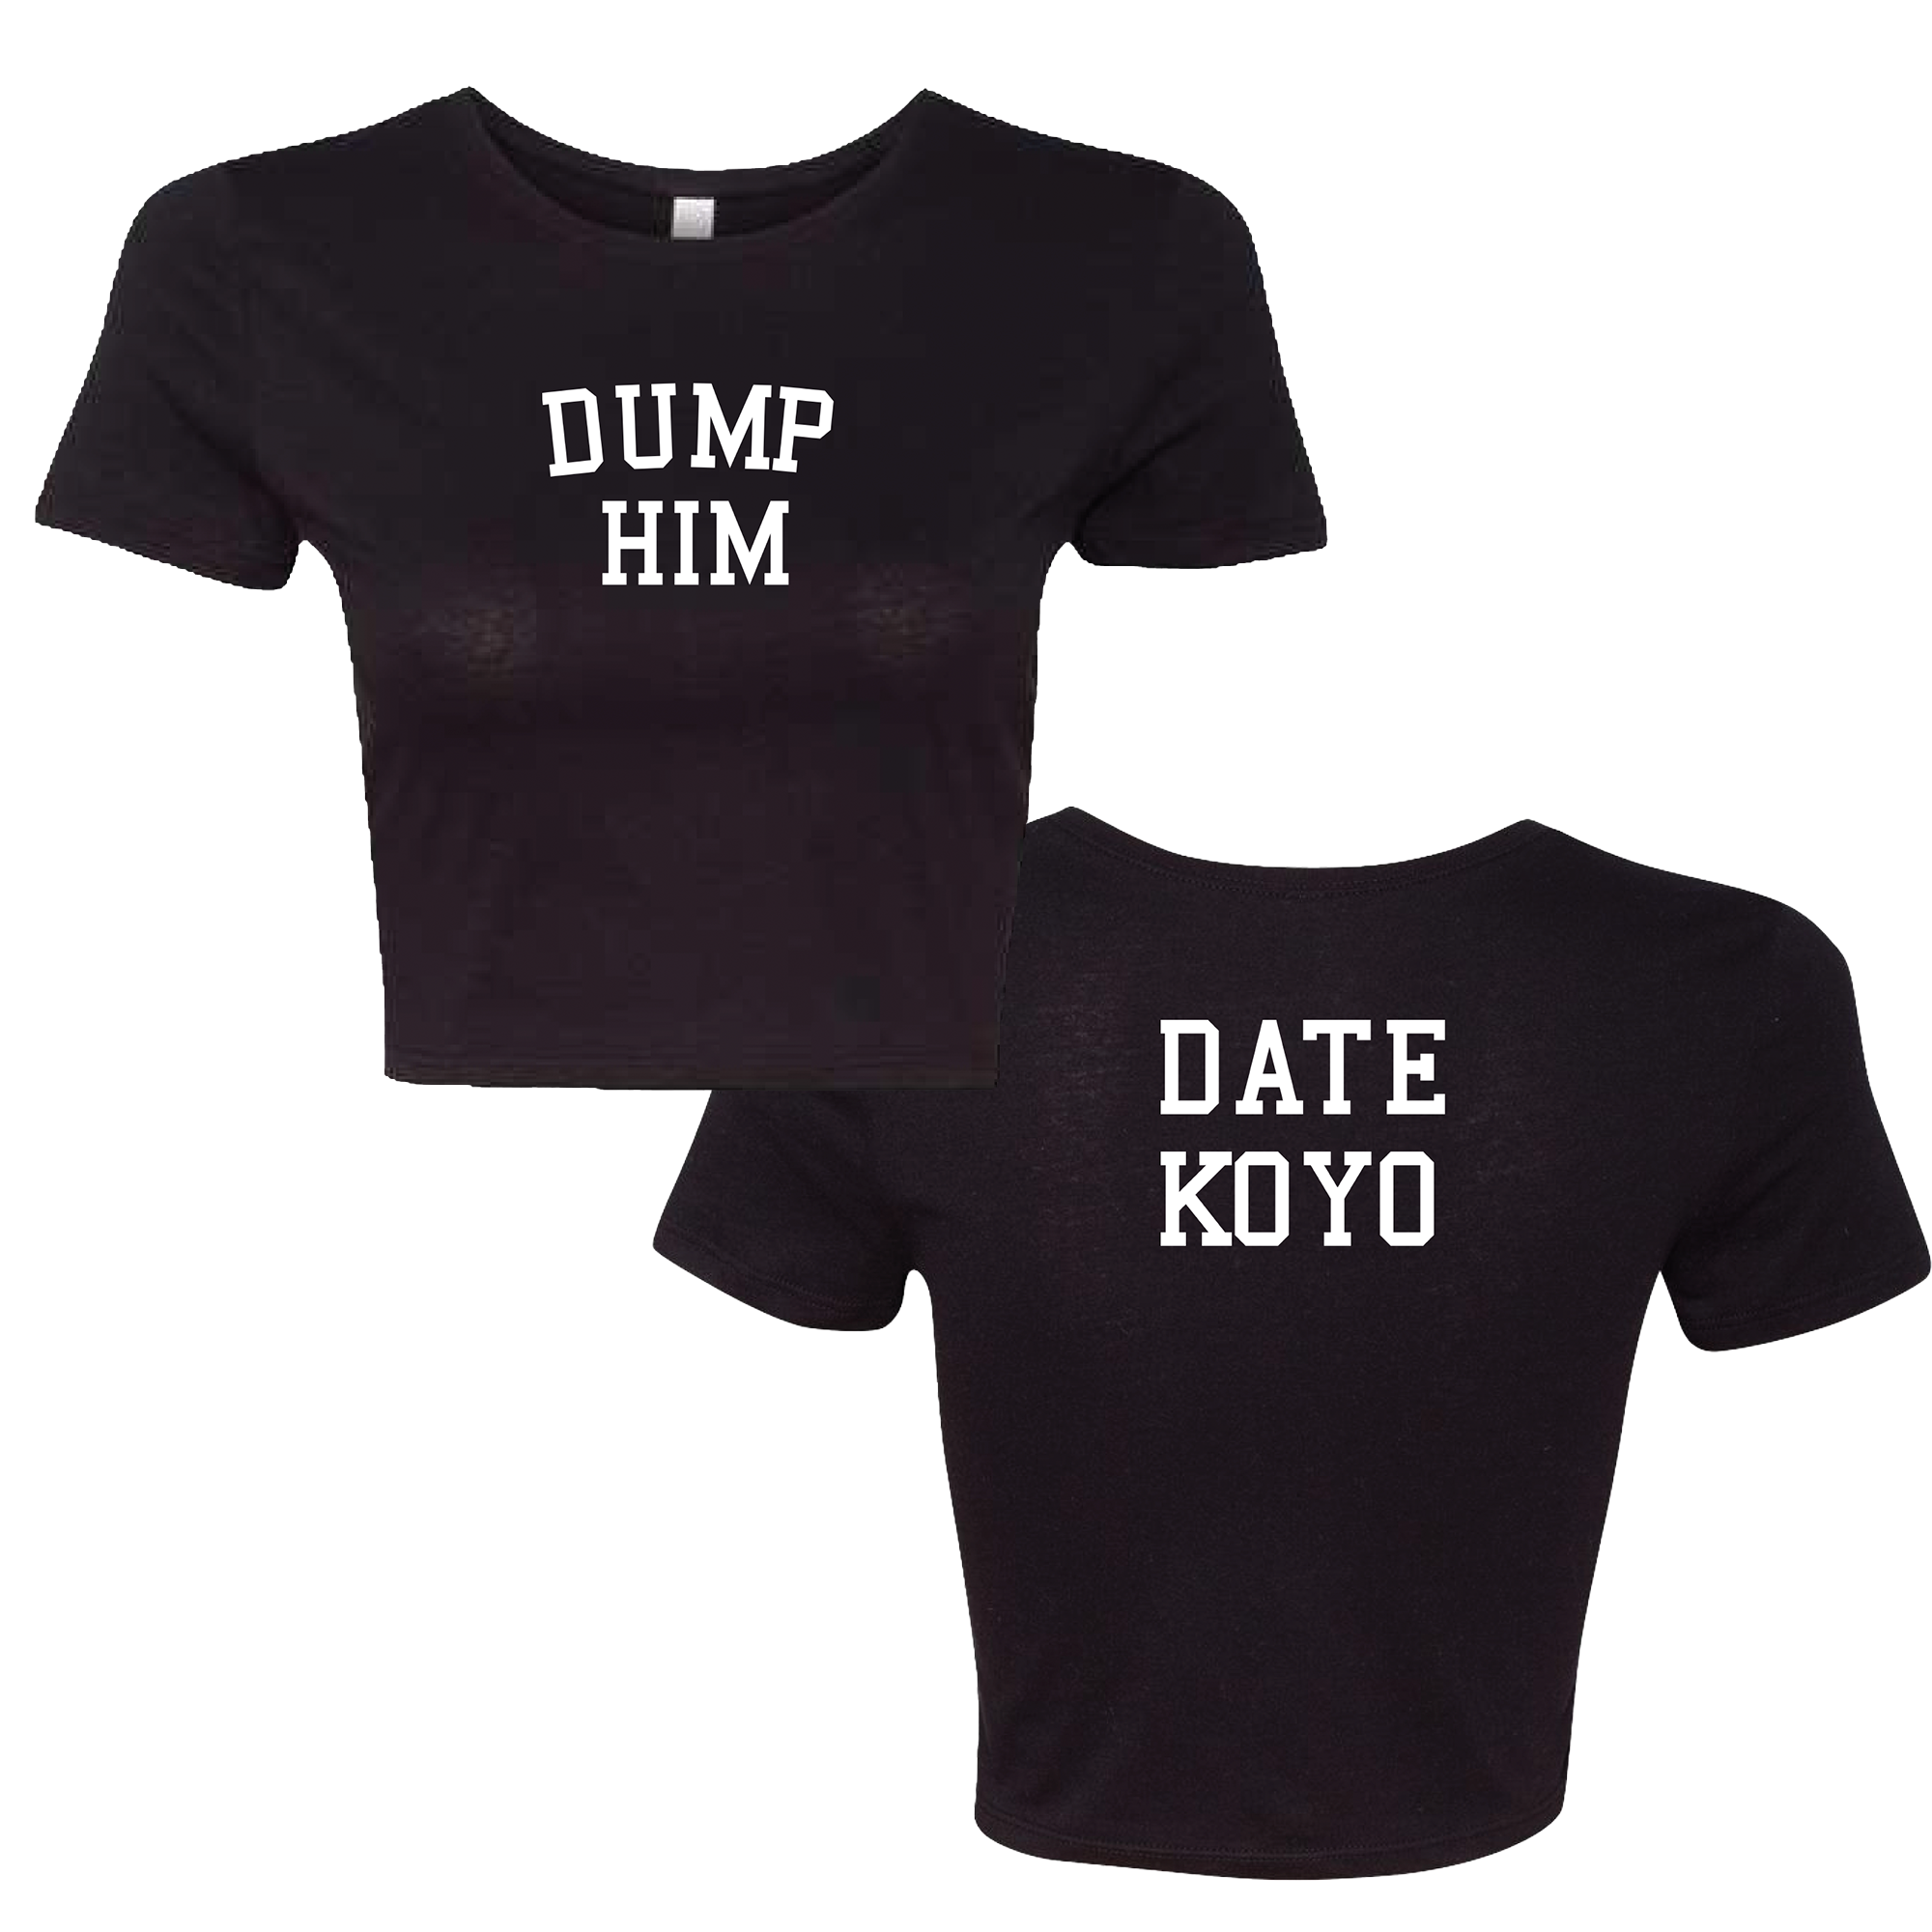 Koyo - Date Koyo Crop